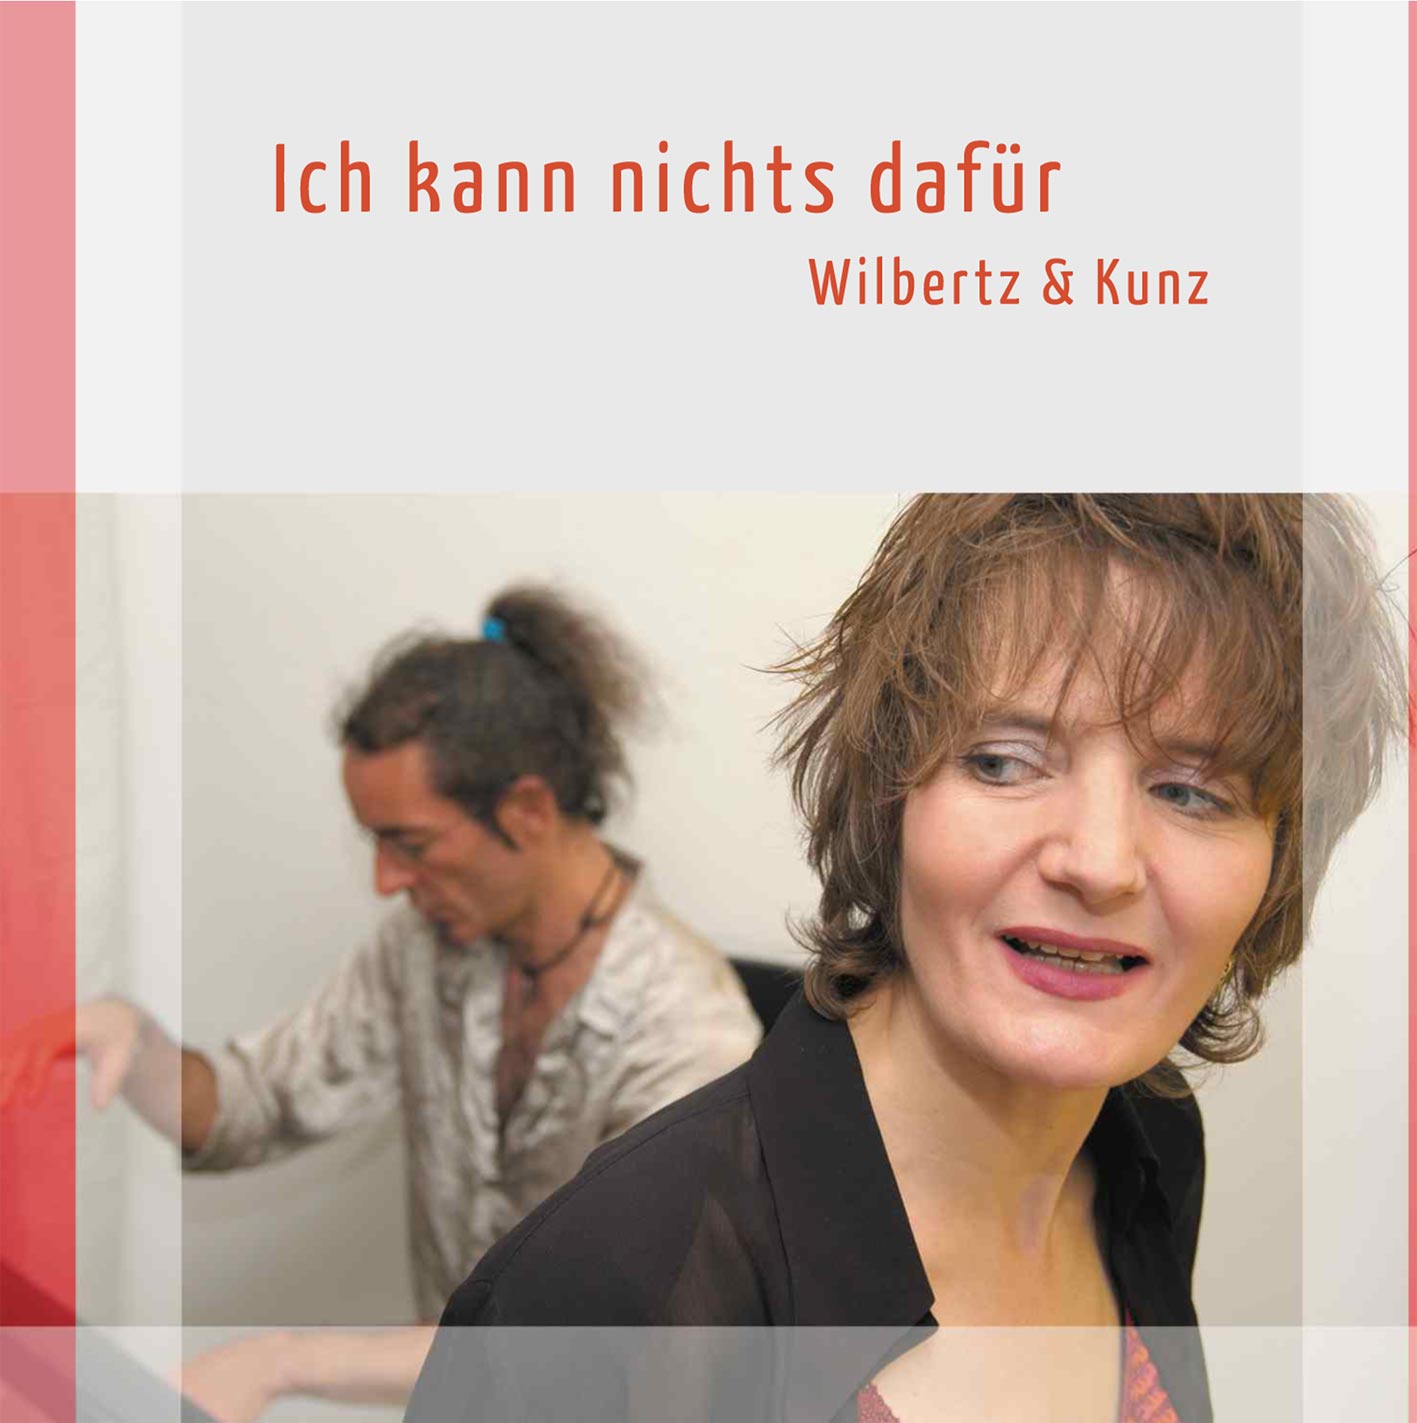 Musikkabarett Wilbertz & Kunz "Ich kann nichts dafür"